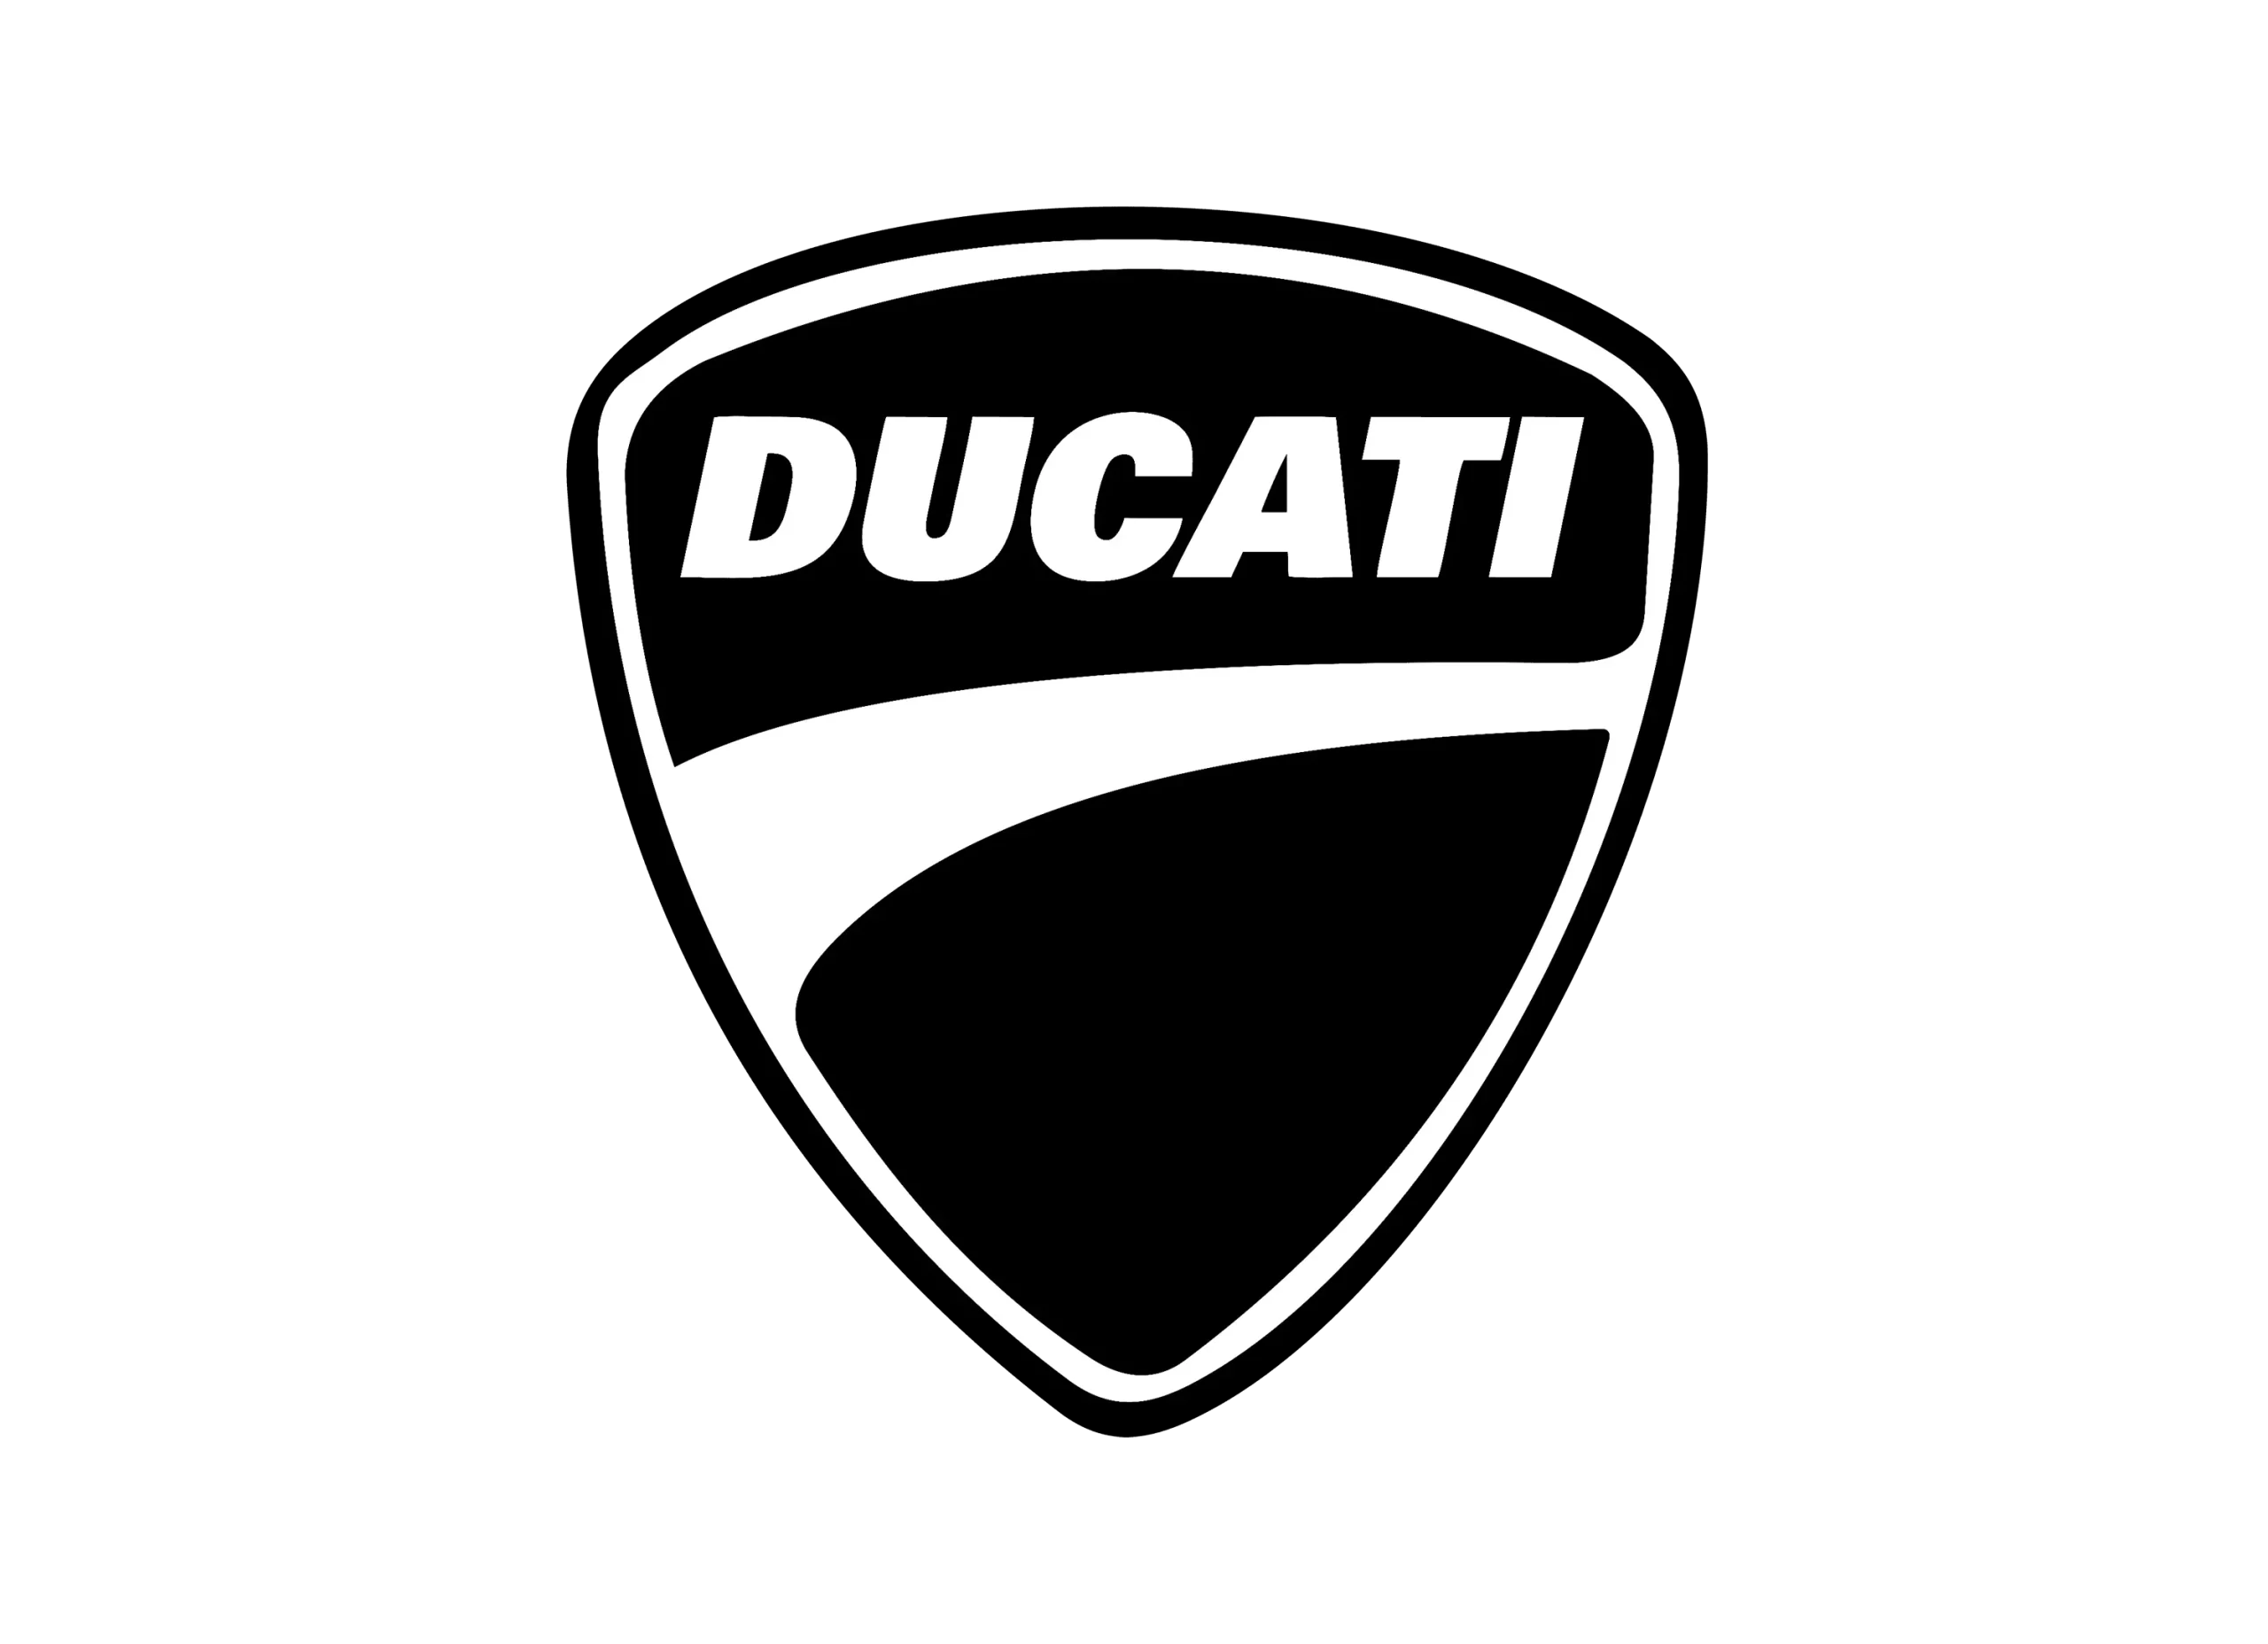 Ducati logo